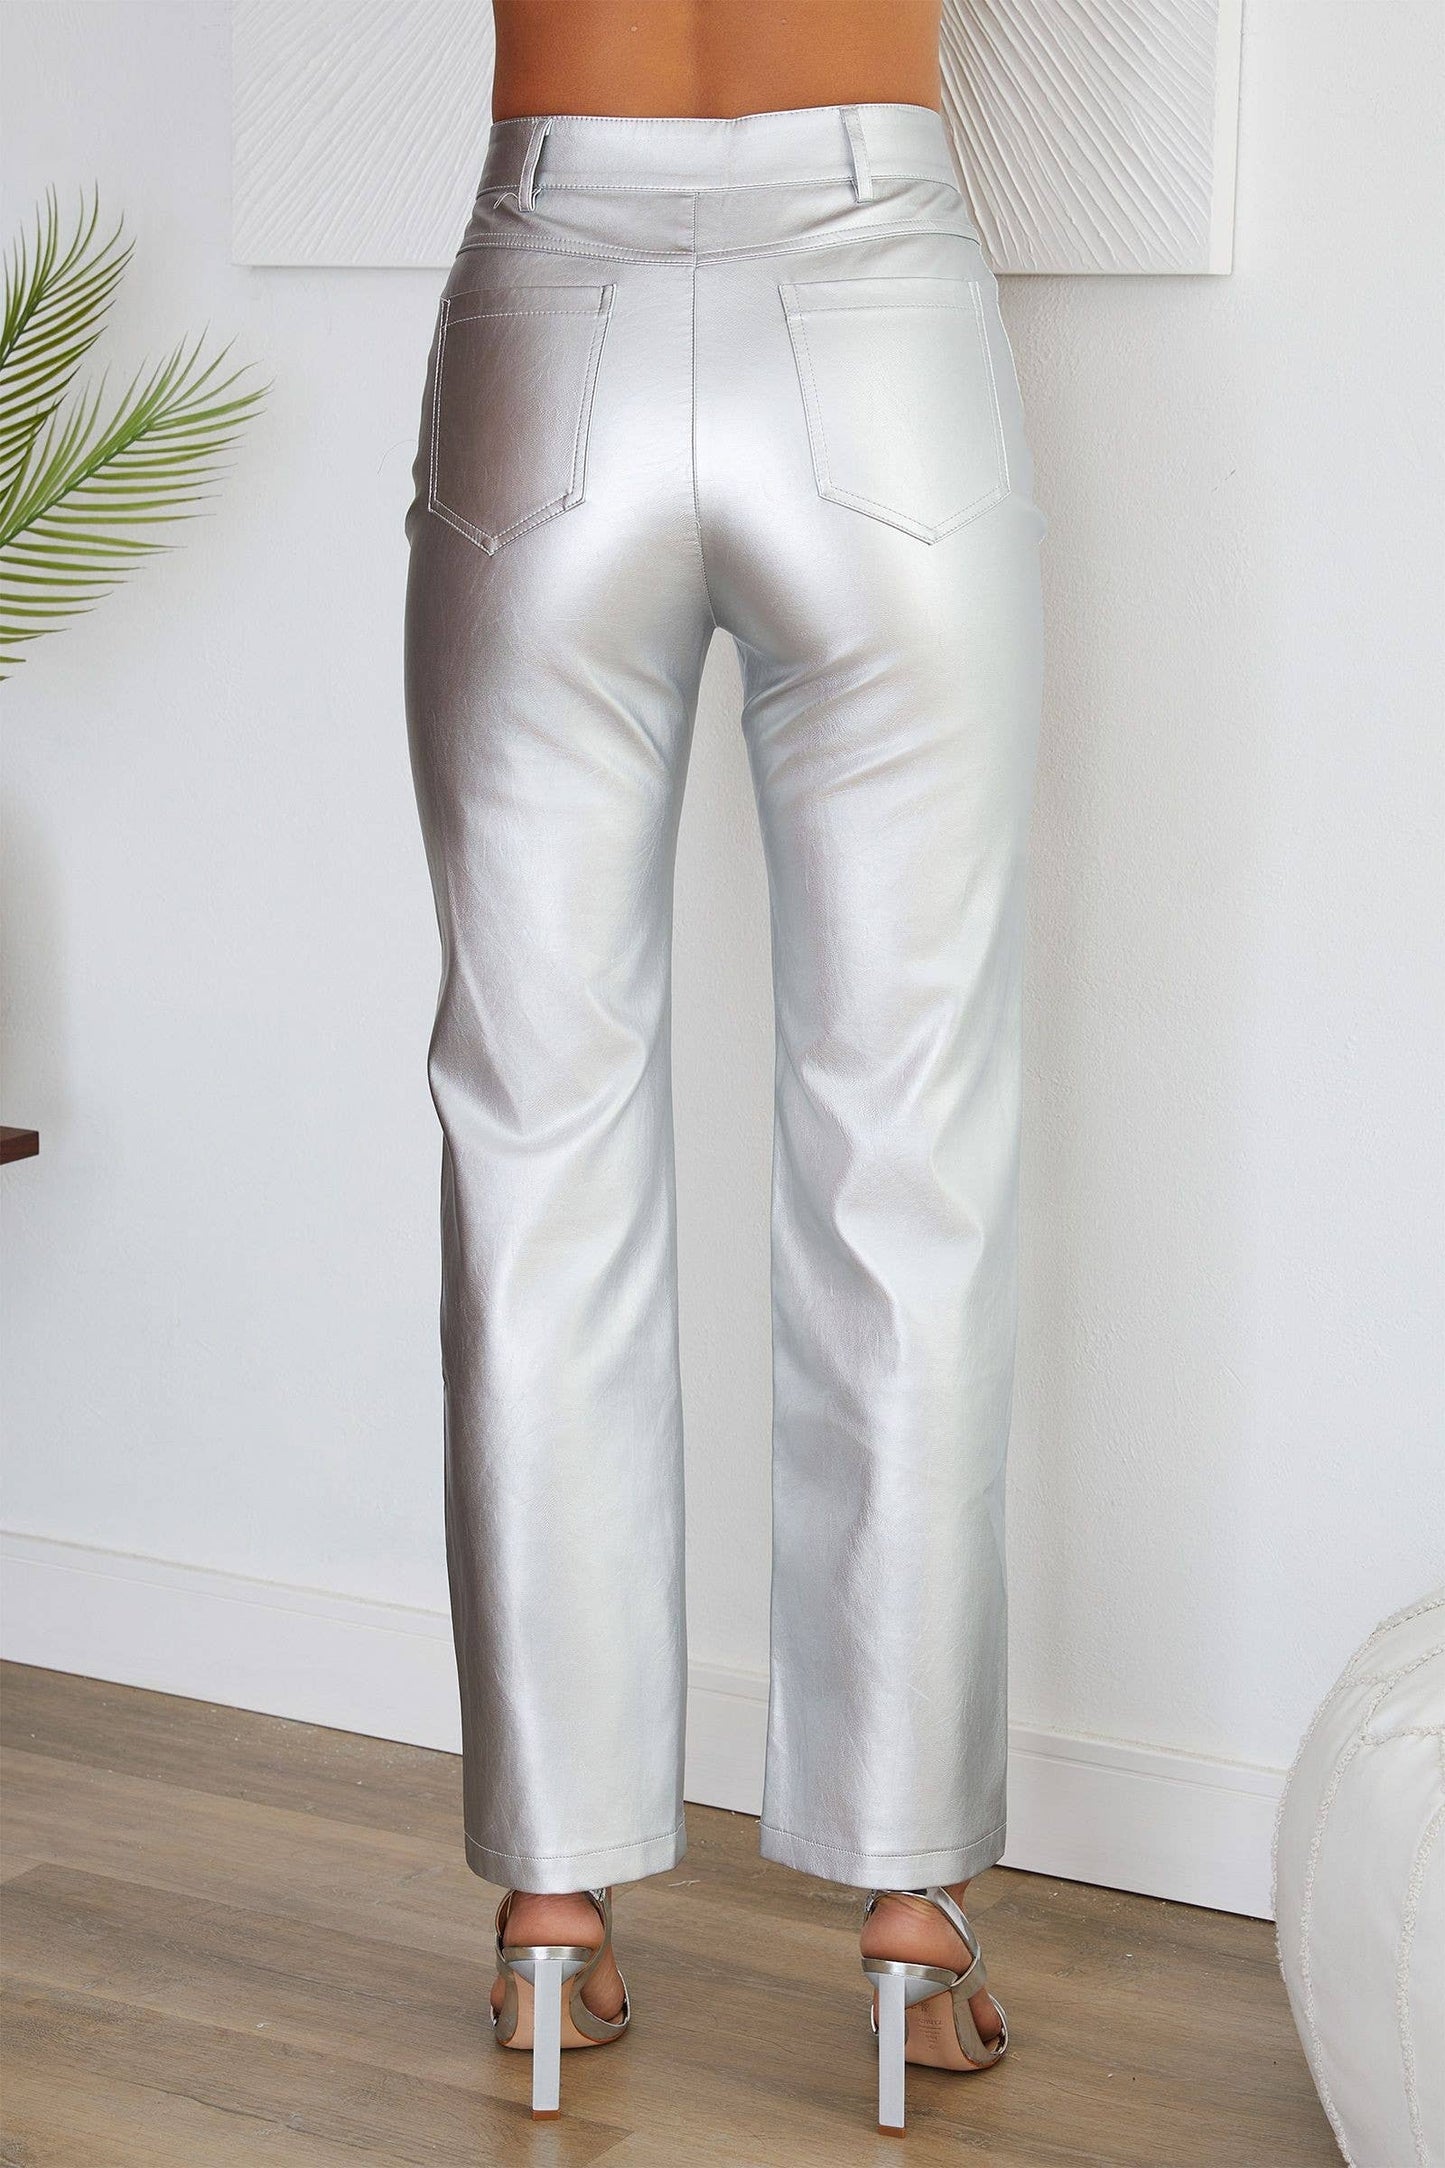 Luna Silver Vegan Leather Pants | Uniquely Claudia Boutique 